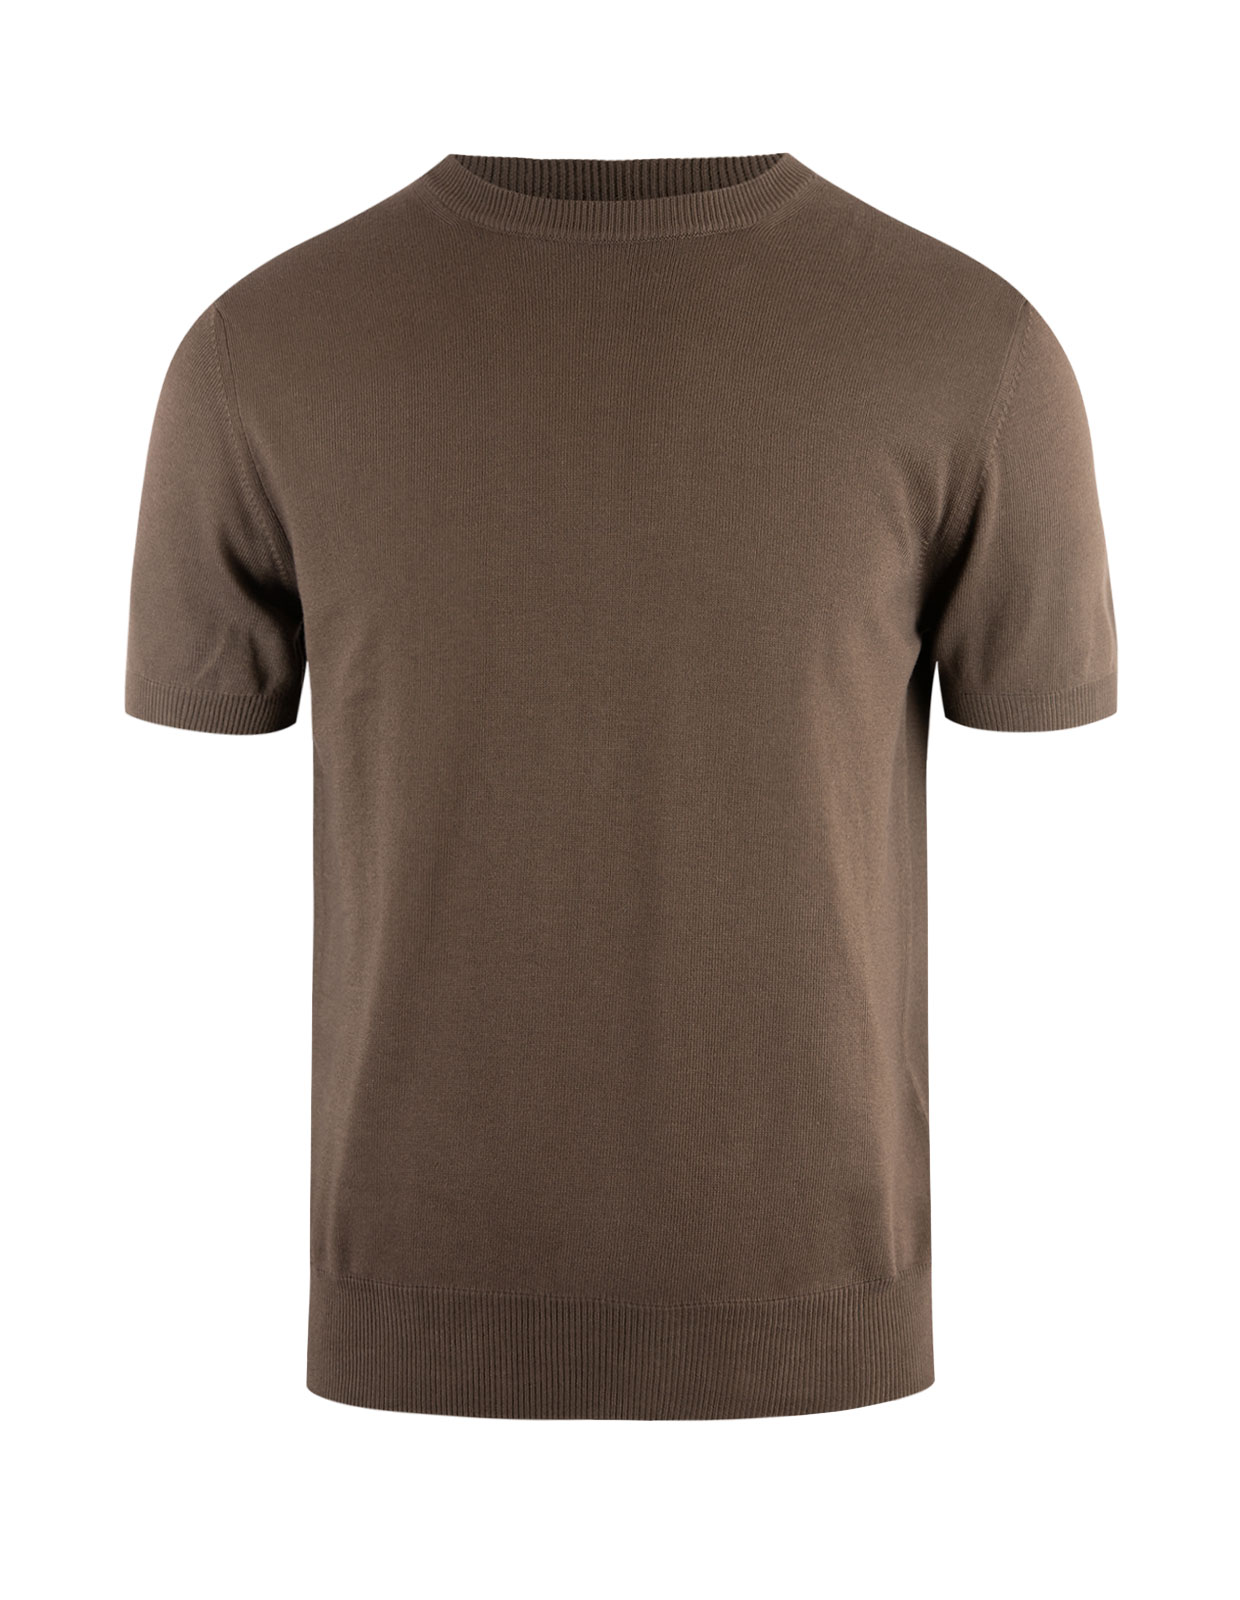 T-shirt Knitted Cotton Dark Brown